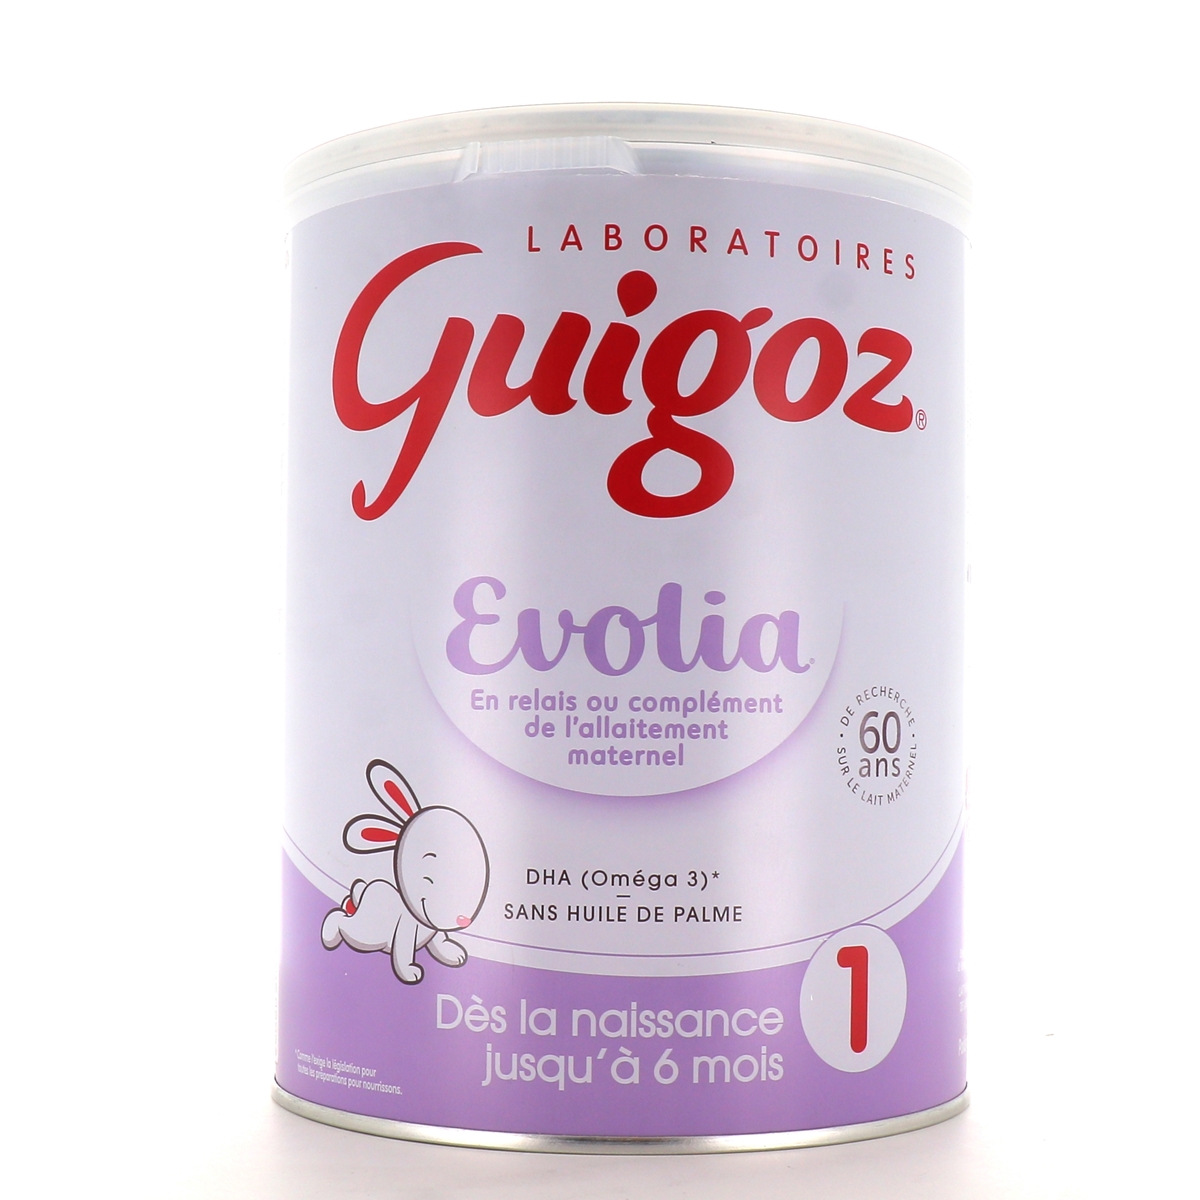 GUIGOZ Evolia relais 1 lait 1er âge en poudre dès la naissance